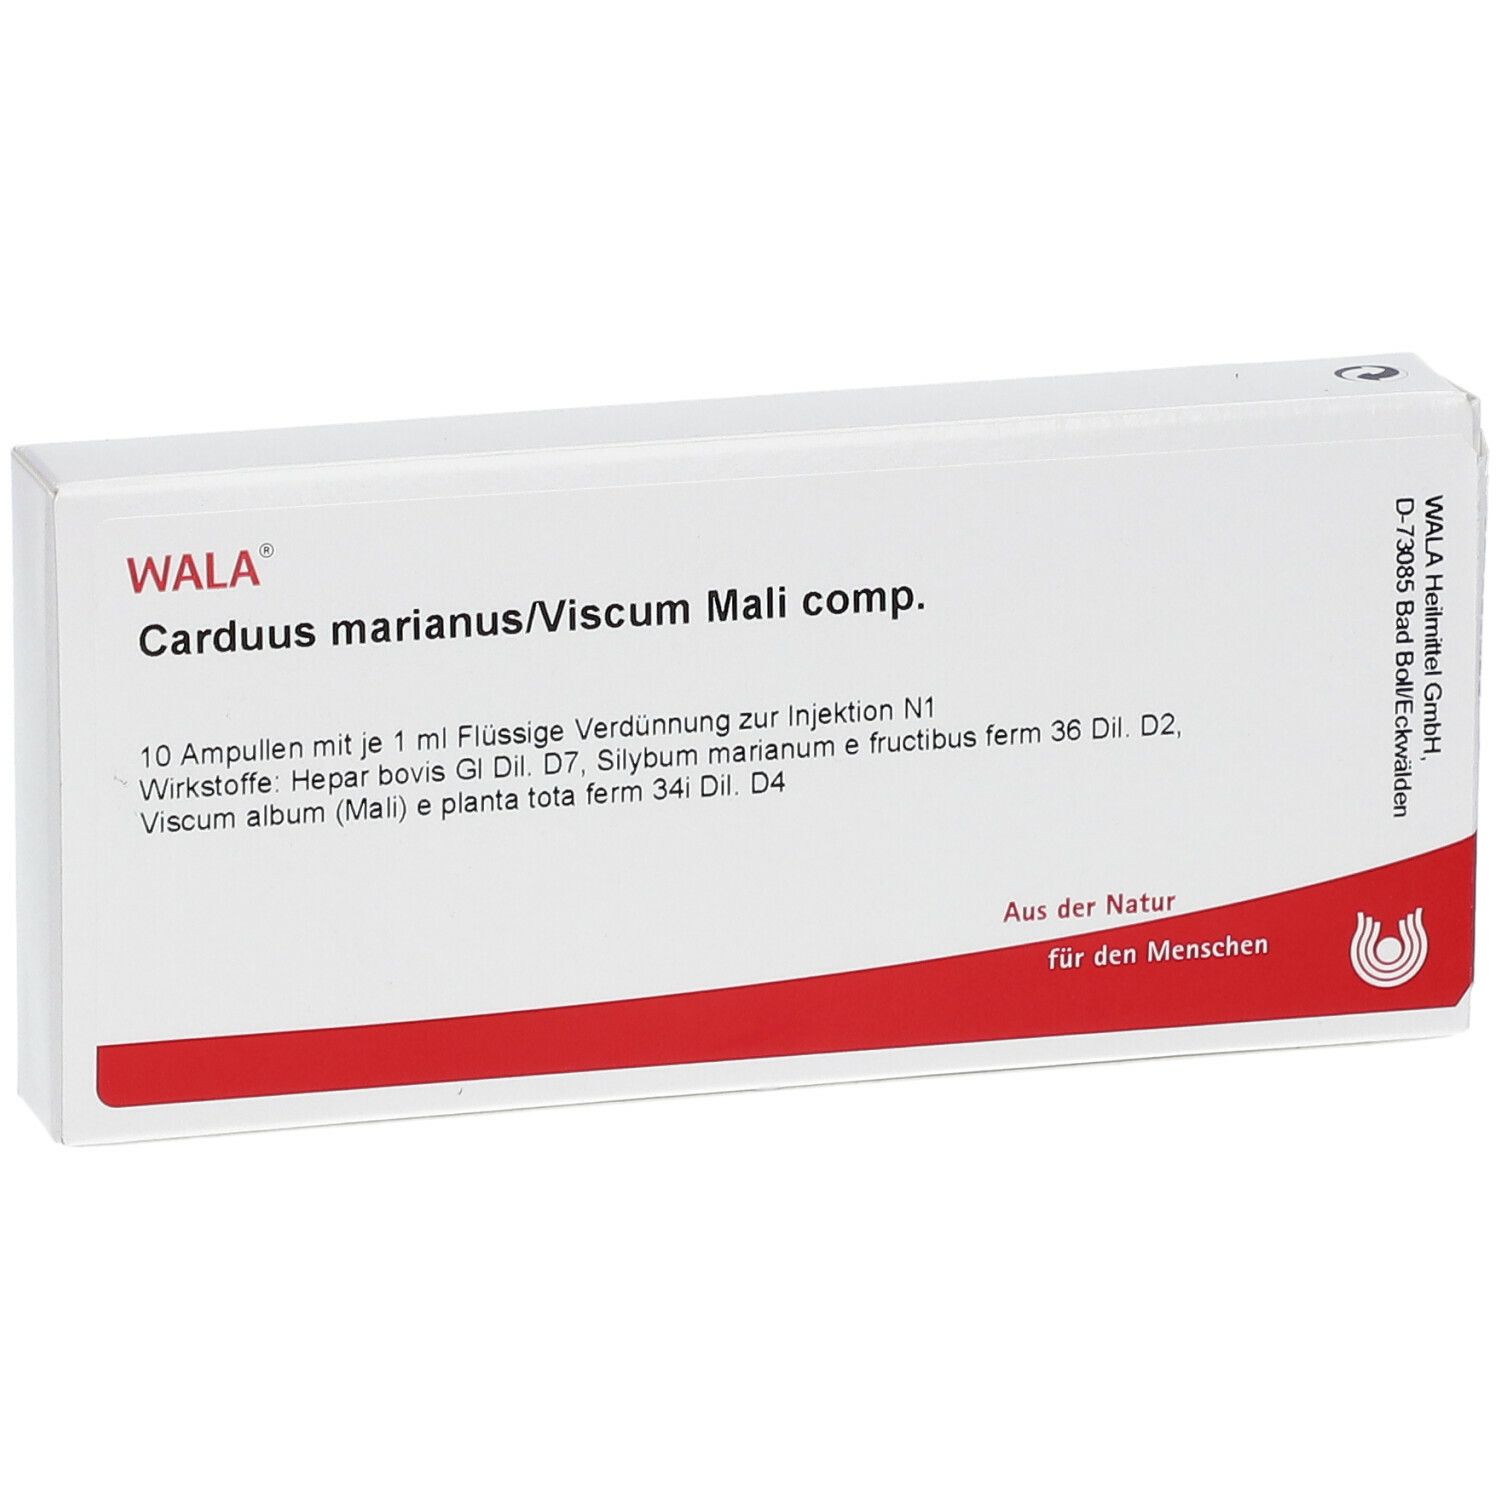 WALA® Carduus MARIANUS/ Viscum Mali Comp. Ampullen